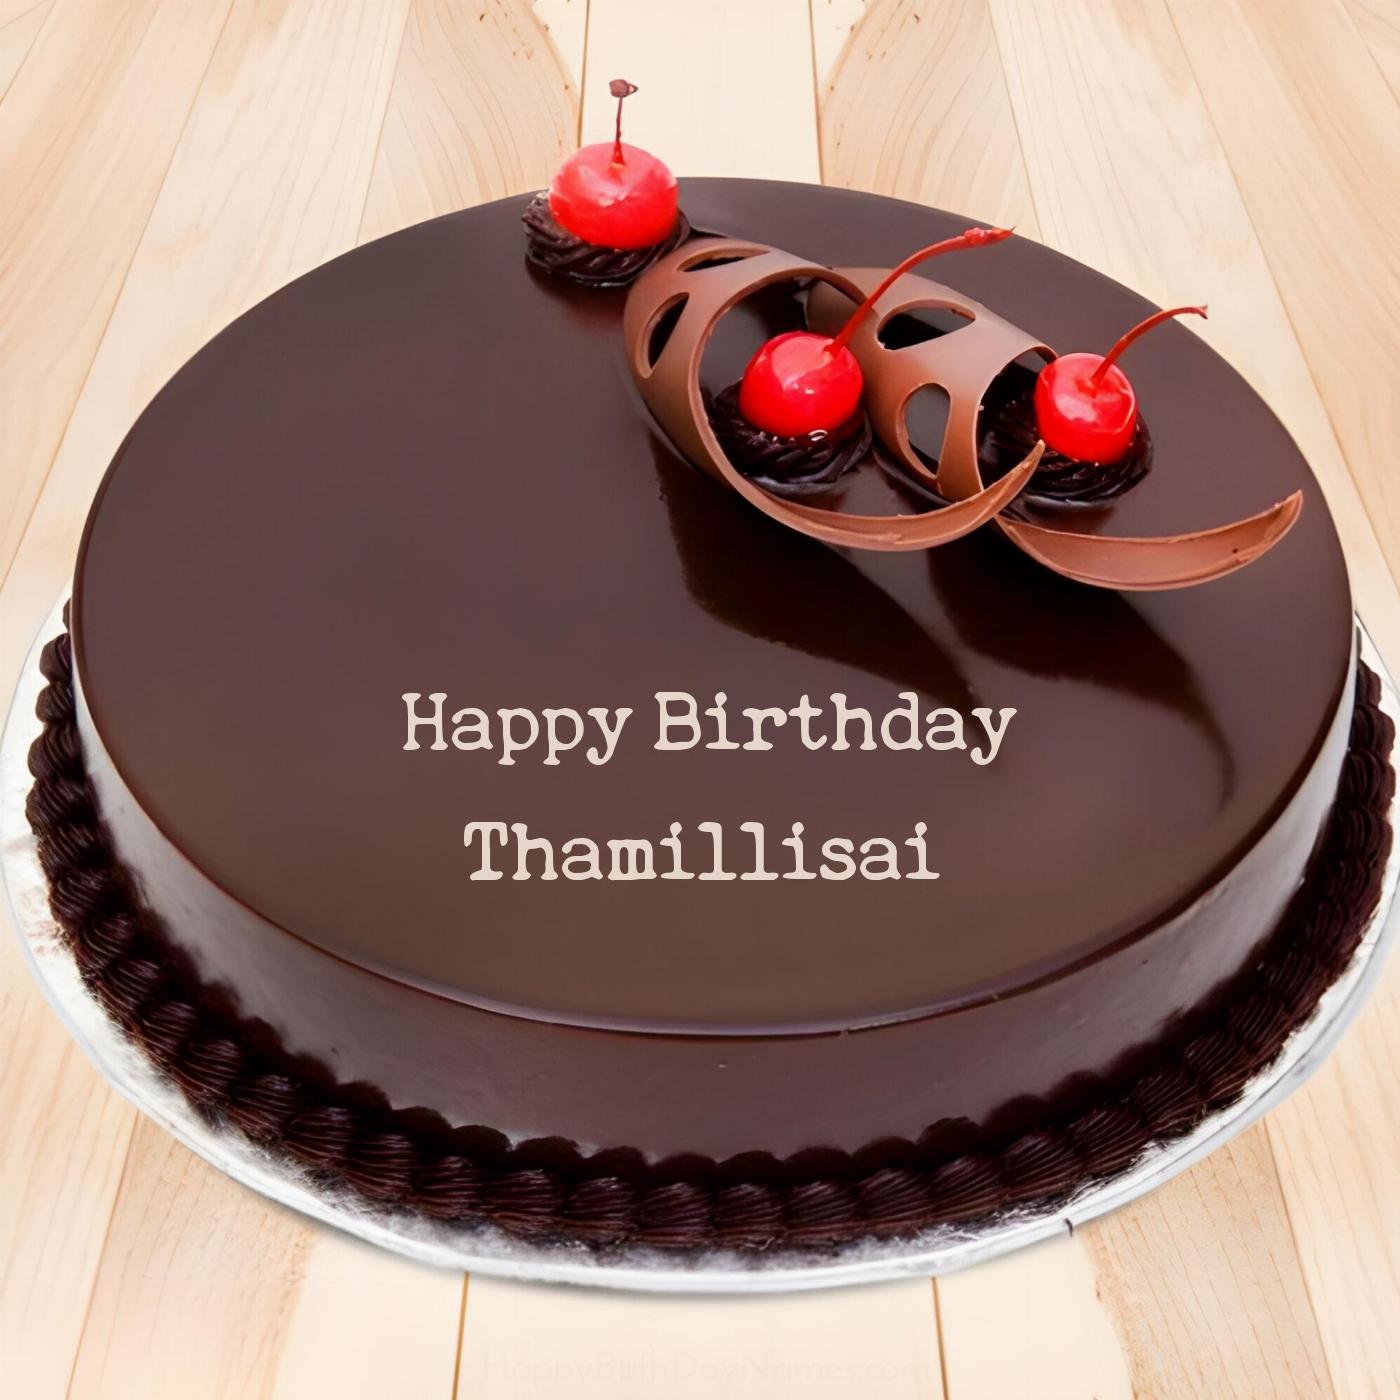 Happy Birthday Thamillisai Chocolate Cherry Cake